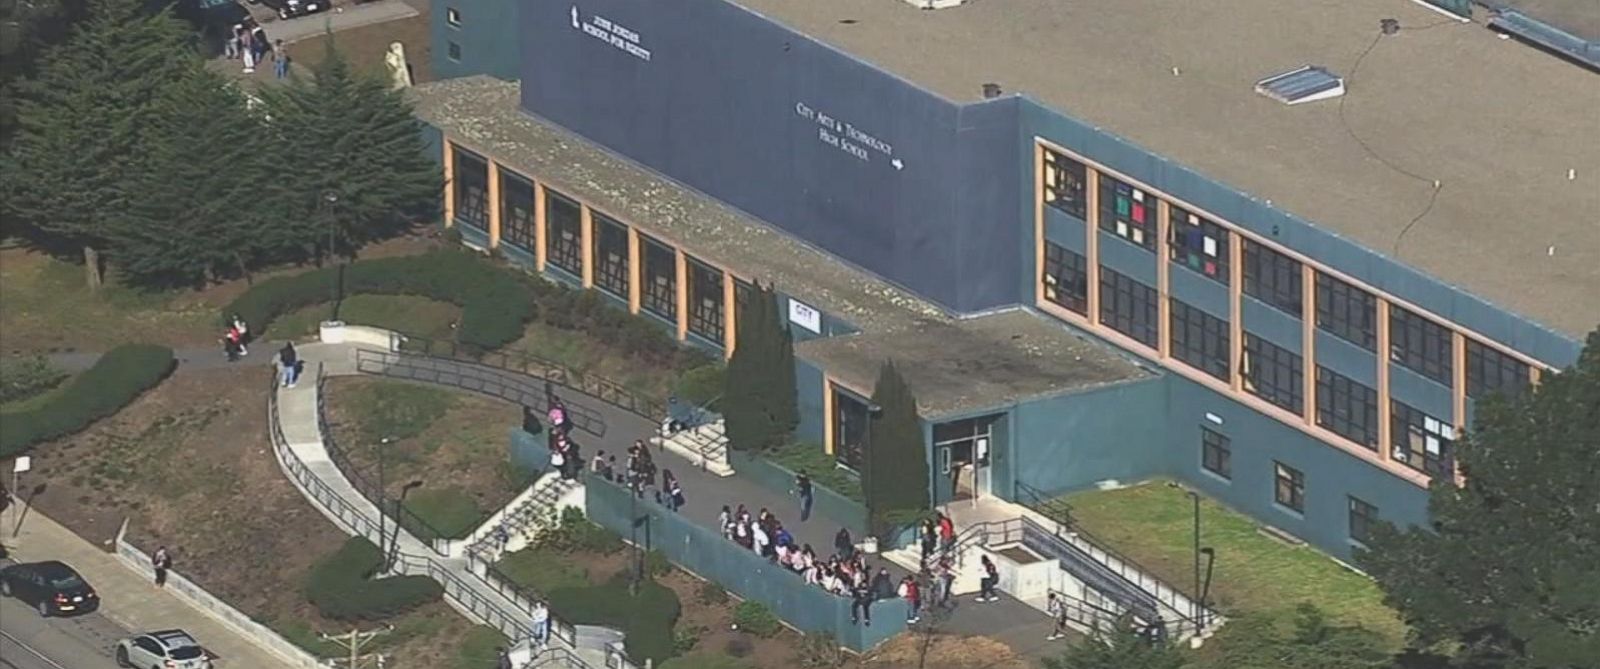 Cảnh sát đang điều tra vụ xả súng tại trường trung học June Jordan, thành phố San Francisco ngày 18-10 - ảnh: ABC News